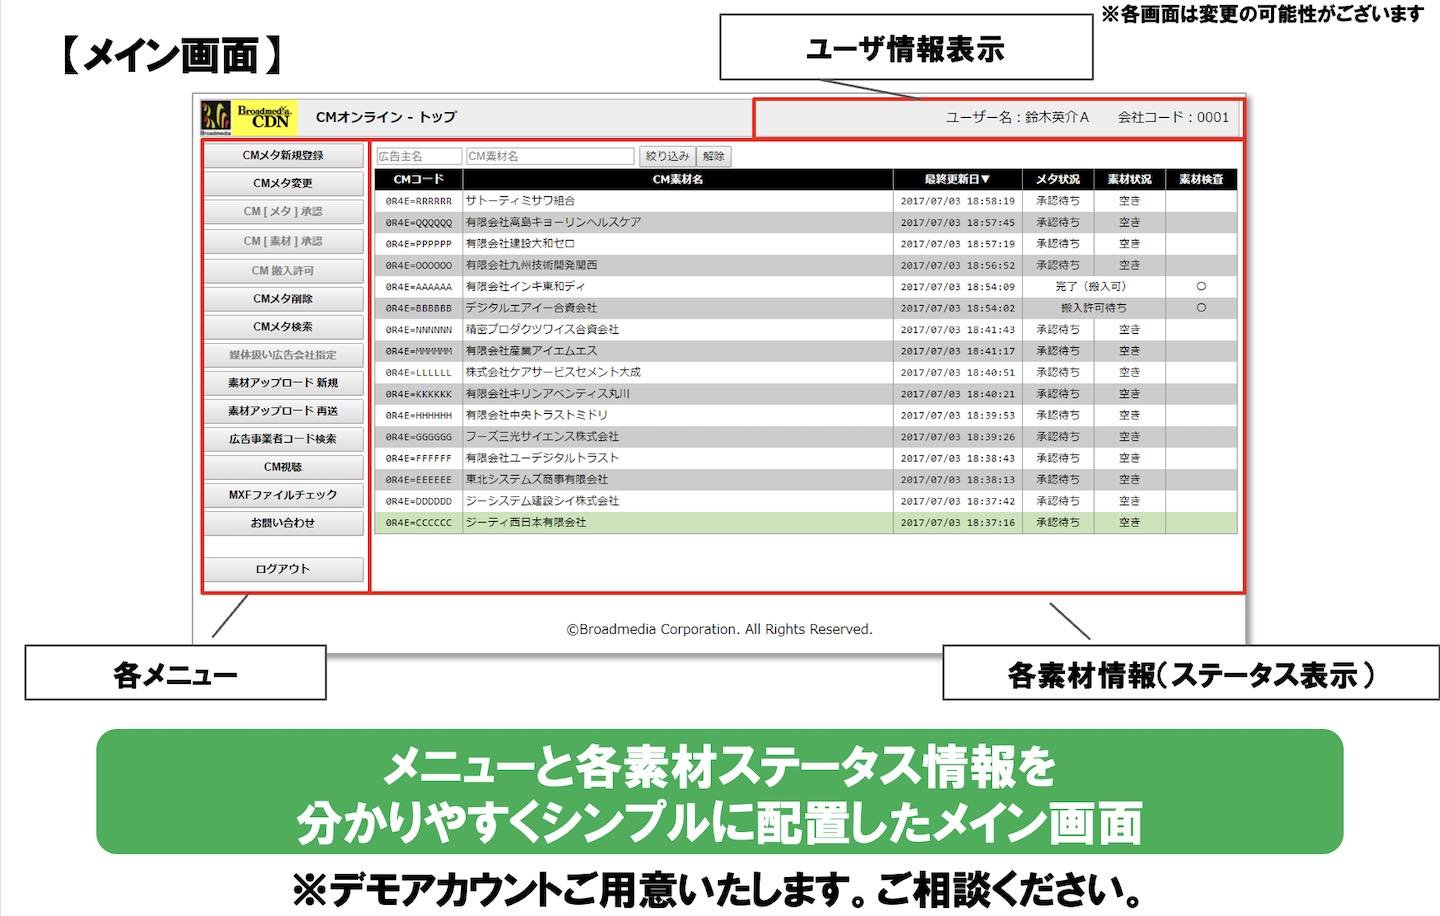 テレビCMのオンライン運用/ブロードメディア CMオンラインのシステム画面イメージ